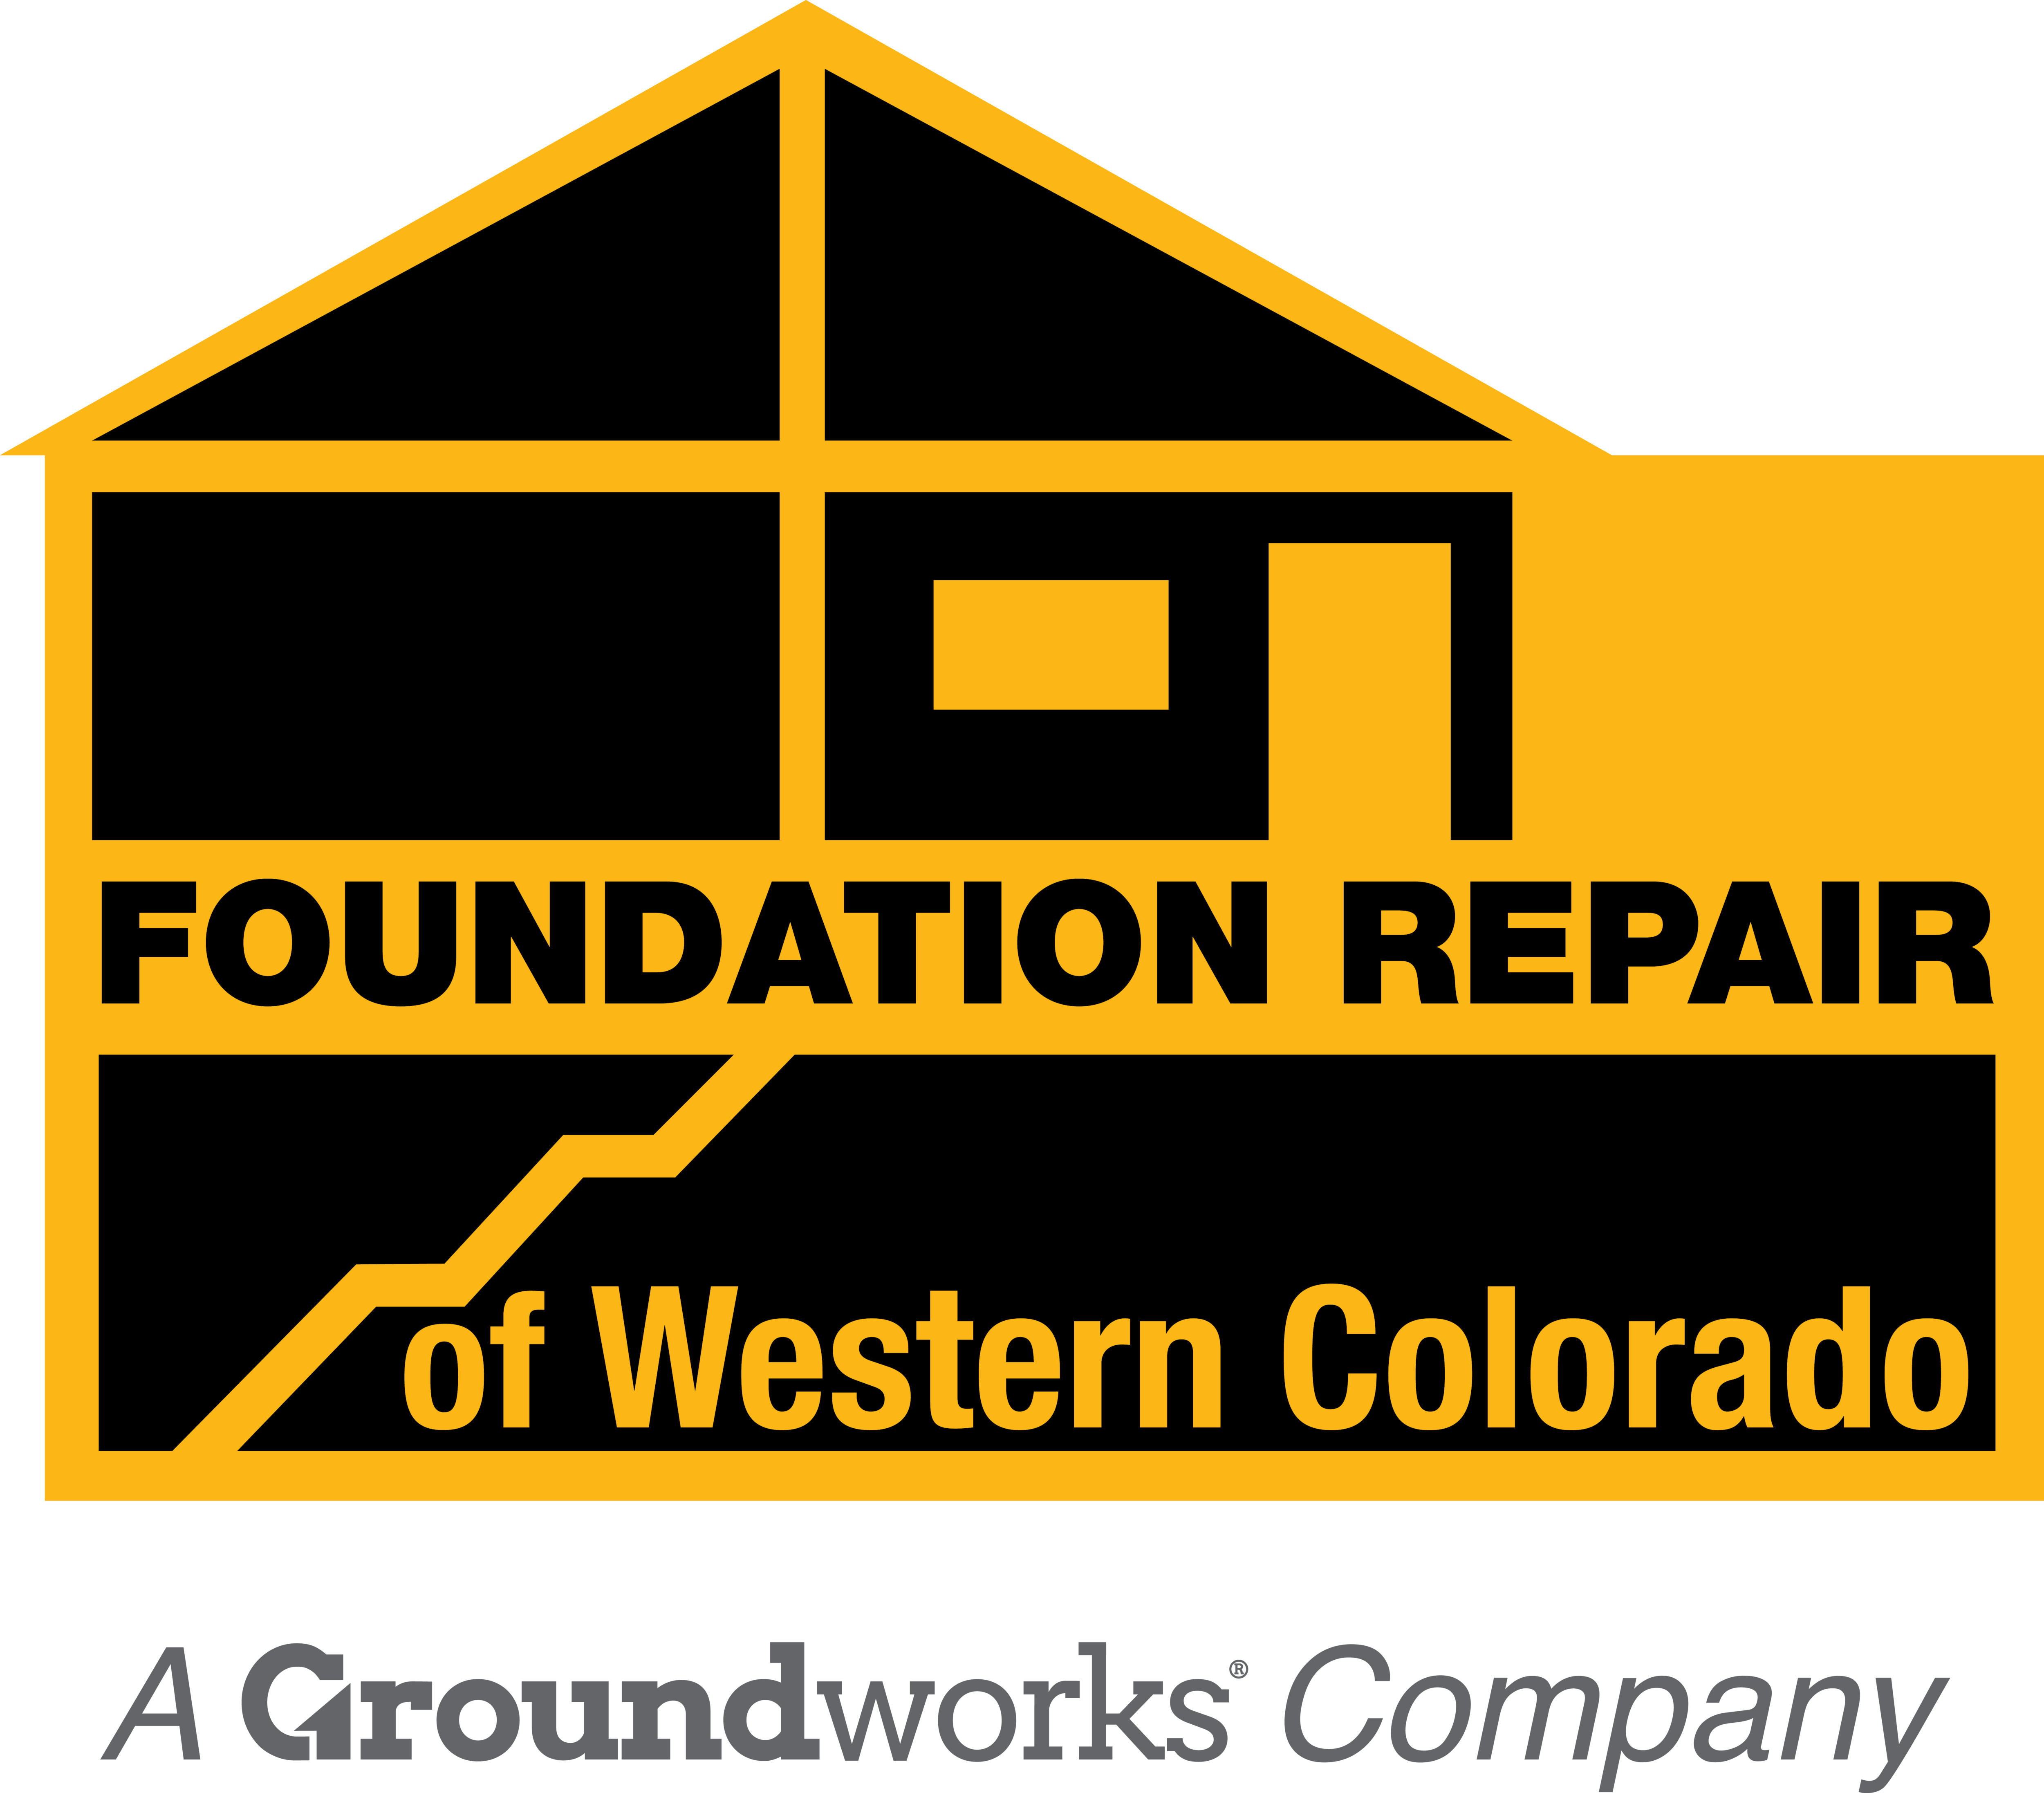 Foundation Repair of Western Colorado logo